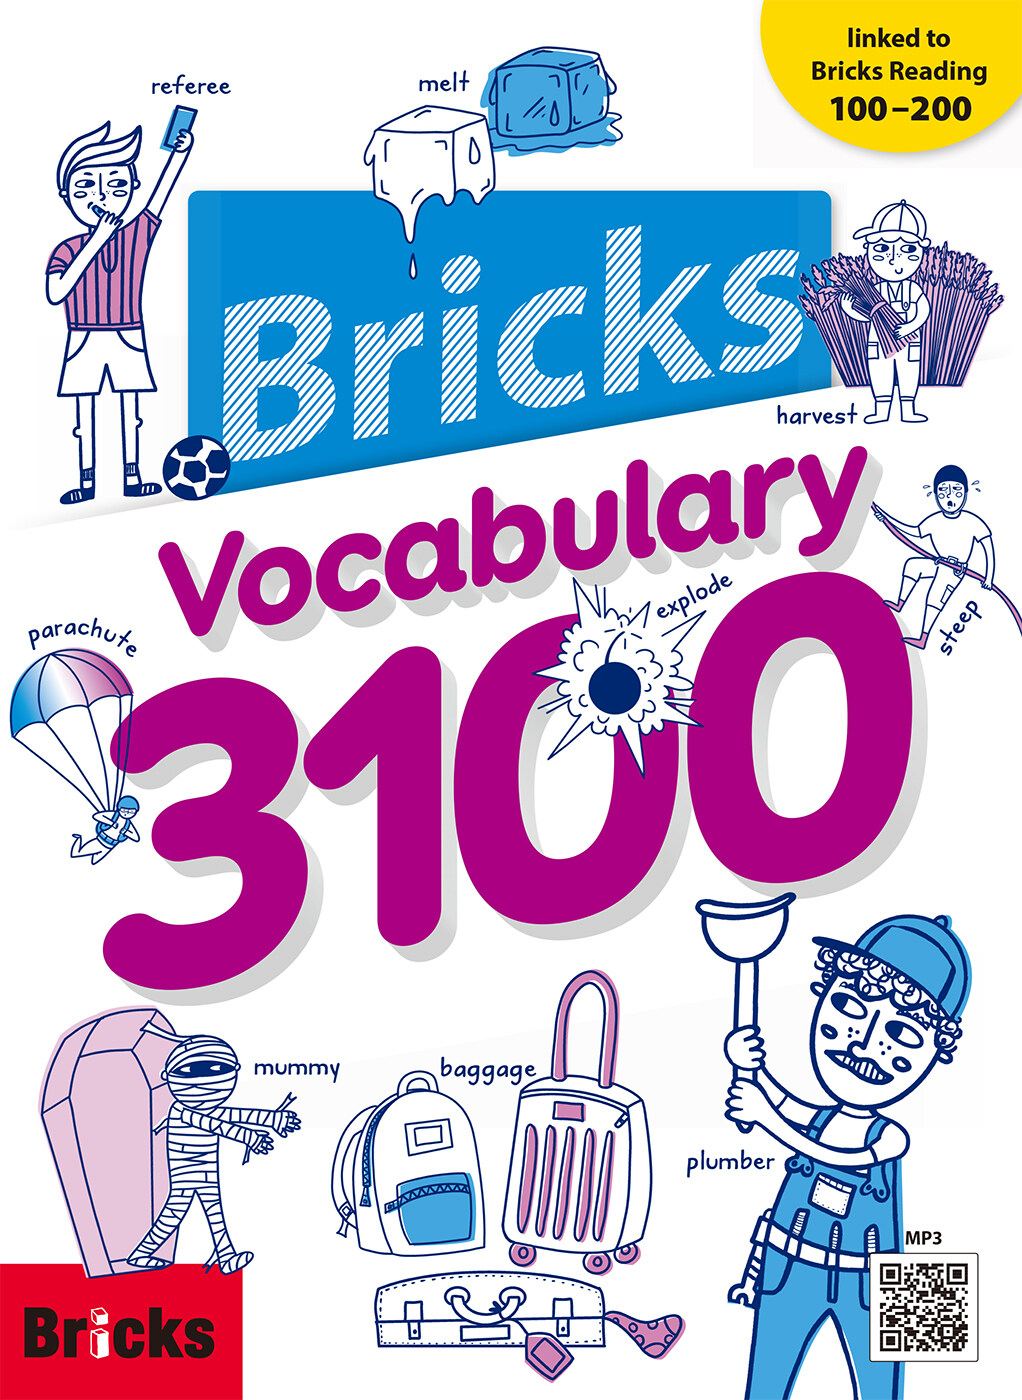 [중고] Bricks Vocabulary 3100